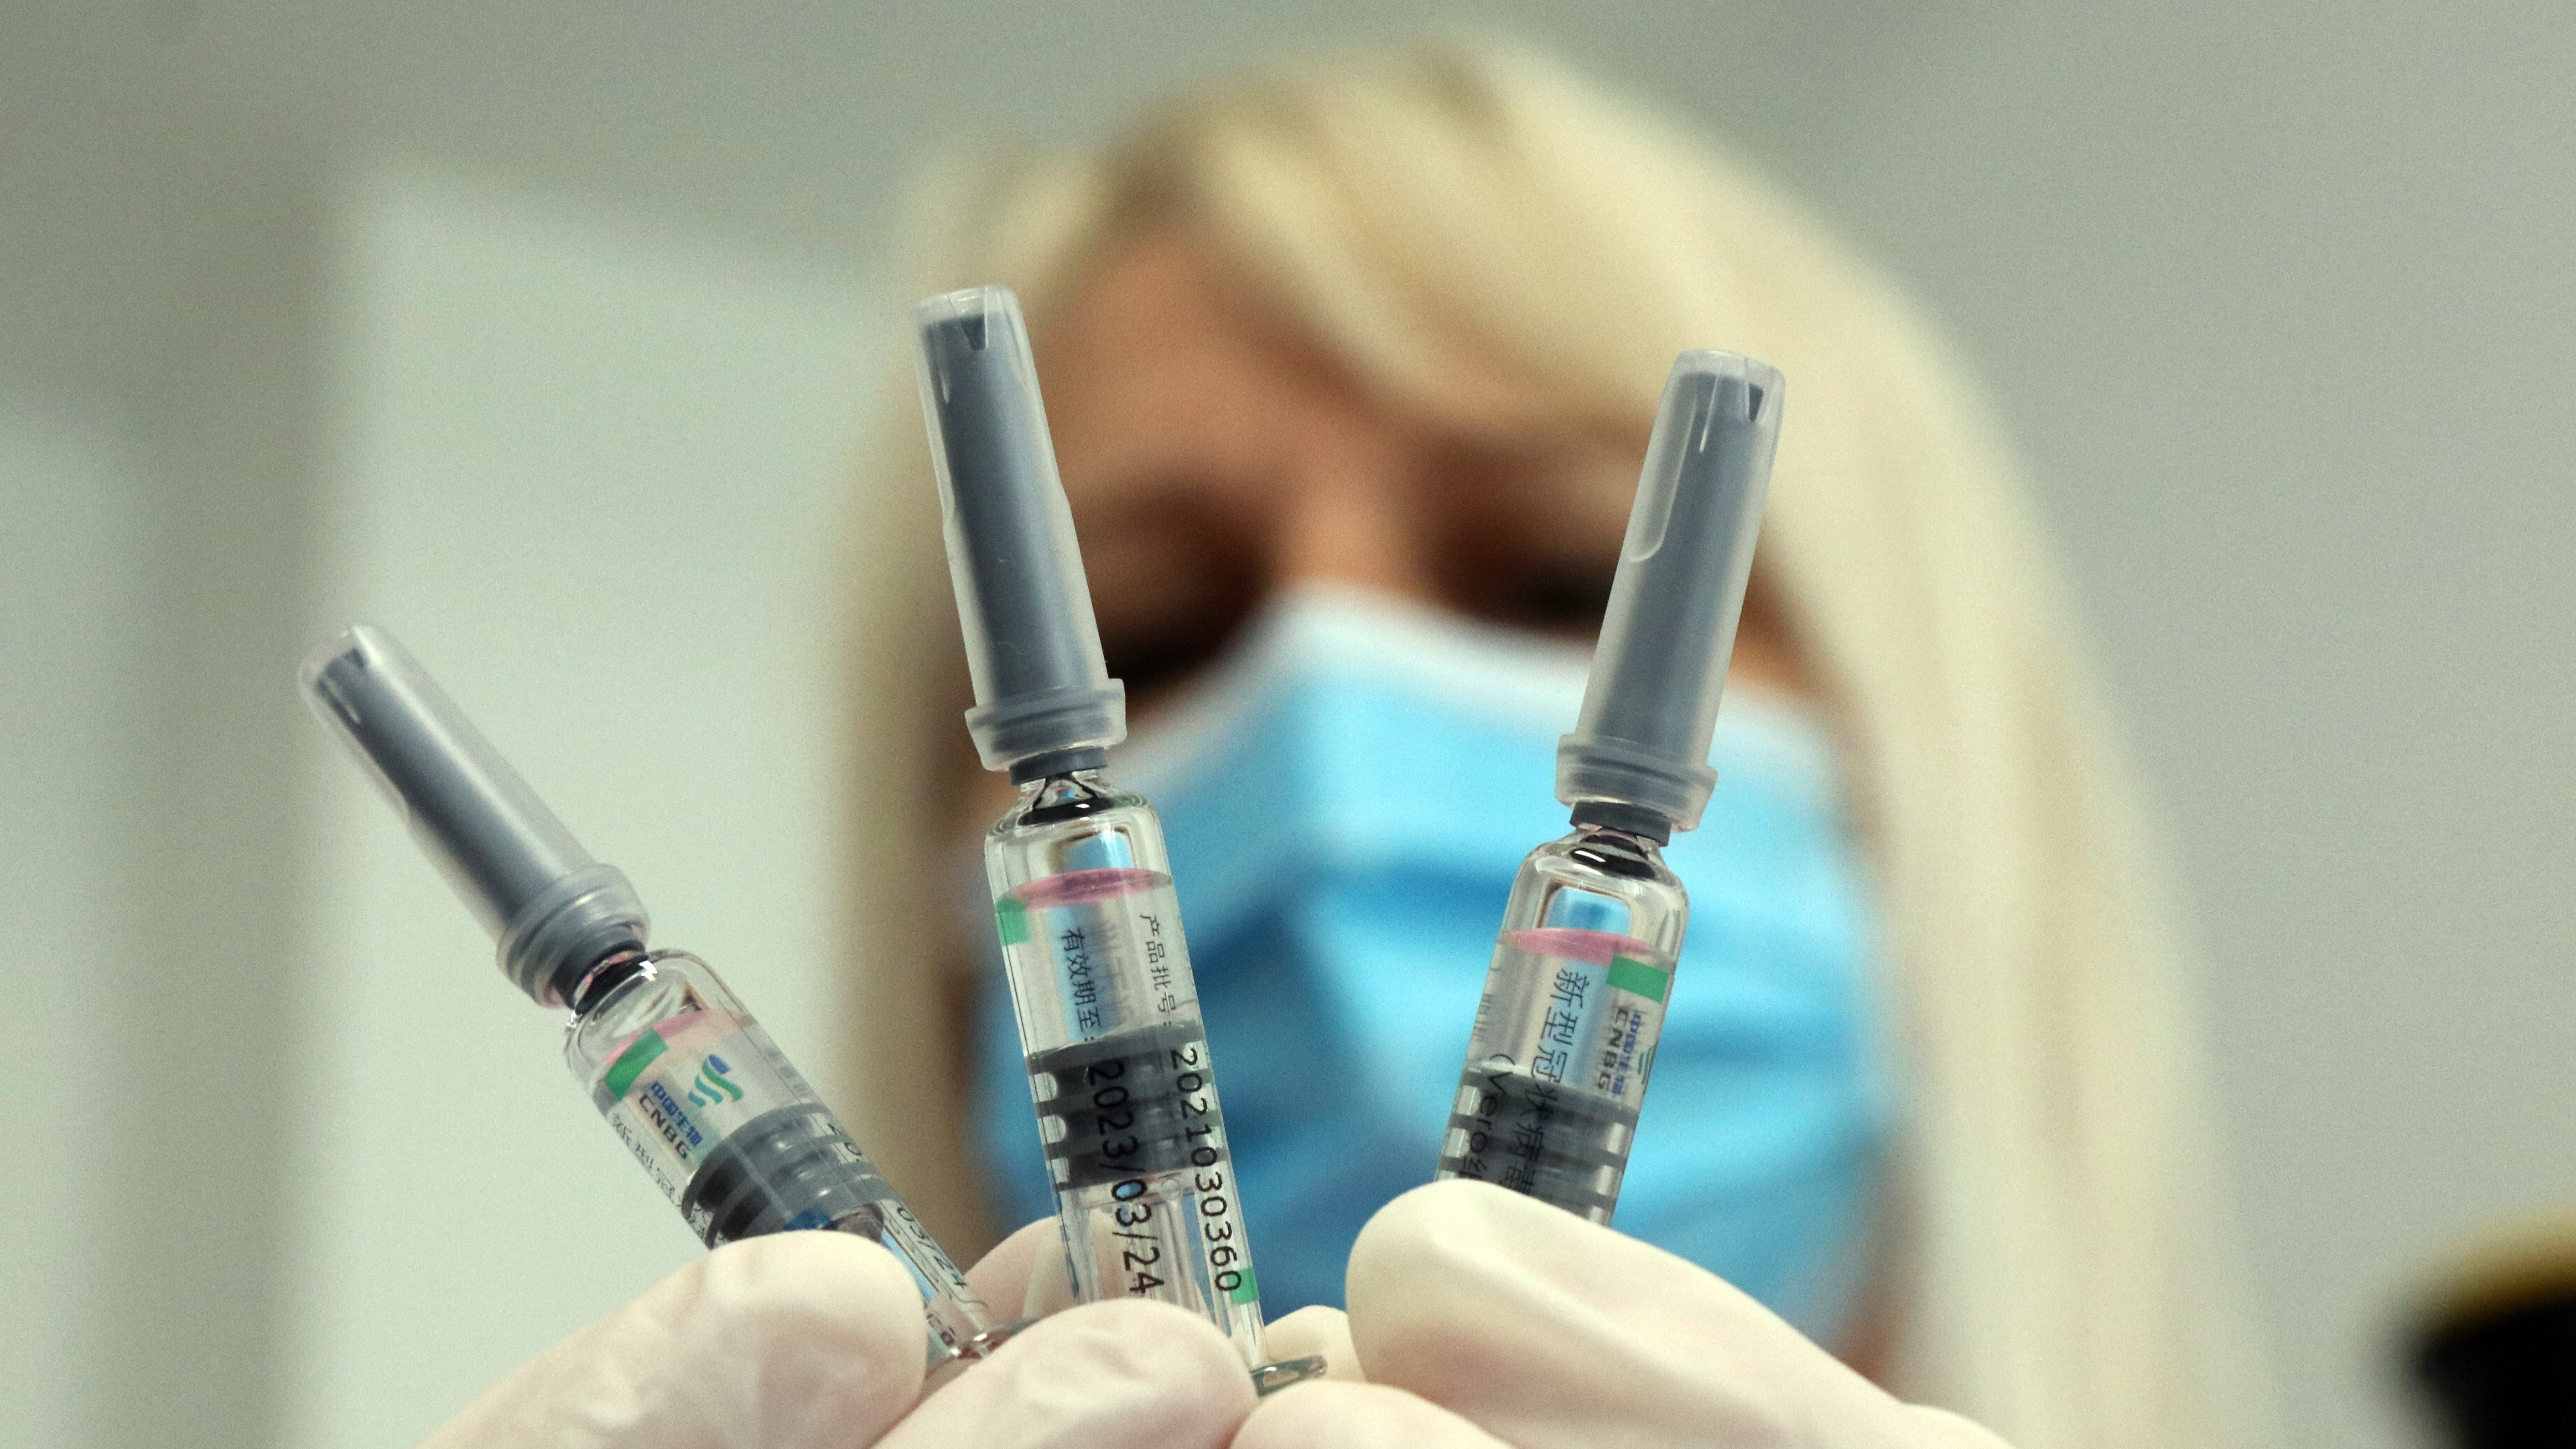 Novák Zita diplomás ápolónő a kínai Sinopharm koronavírus elleni vakcinákat mutat a Borsod-Abaúj-Zemplén Megyei Központi Kórház és Egyetemi Oktatókórházban kialakított oltóponton 2021. április 26-án.